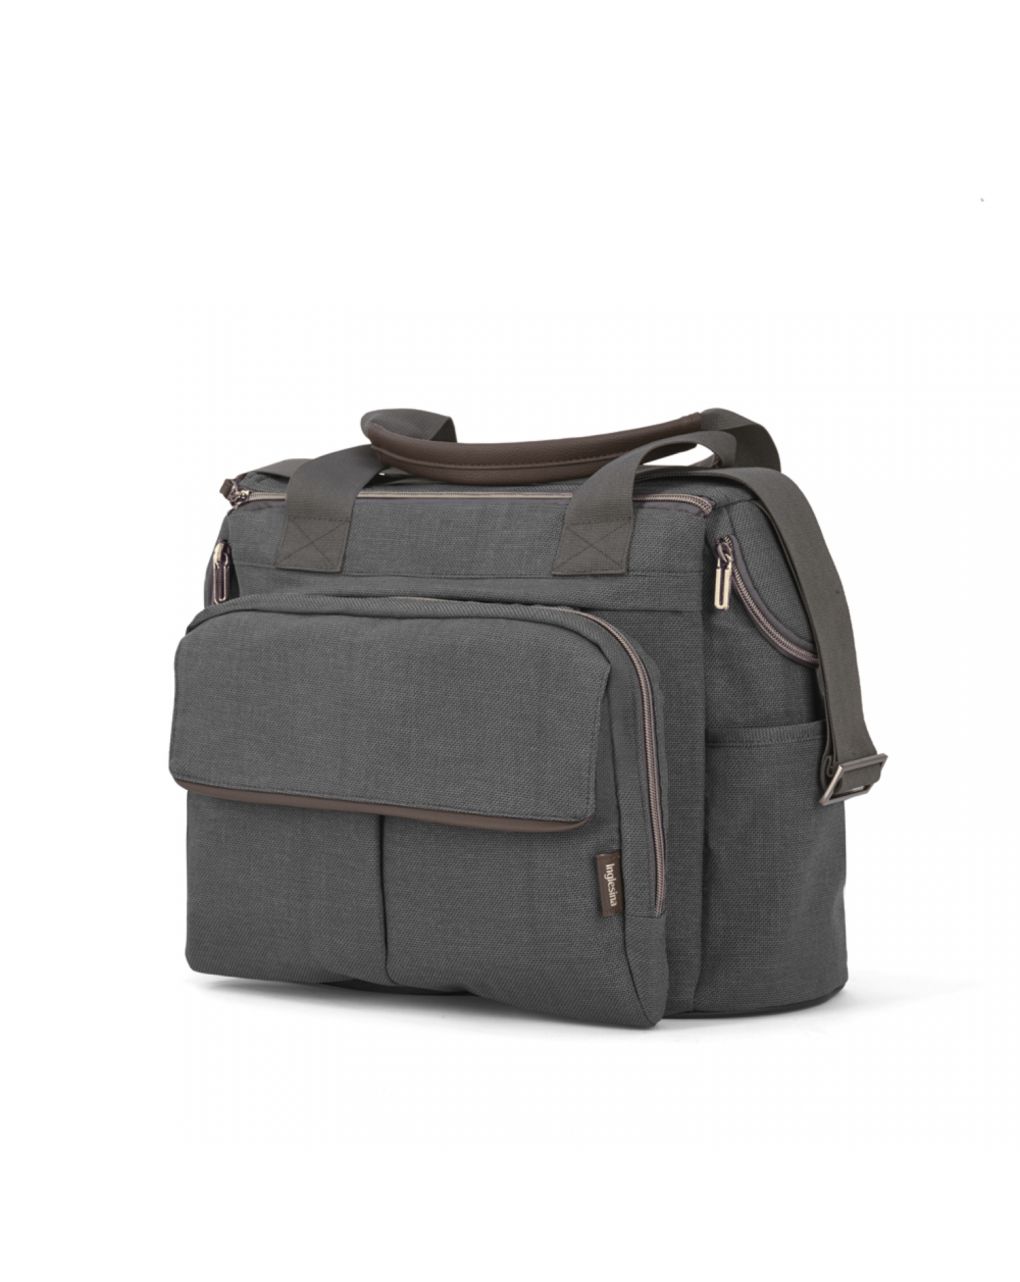 Bolso dual bag aptica velvet grey - inglesina - Inglesina